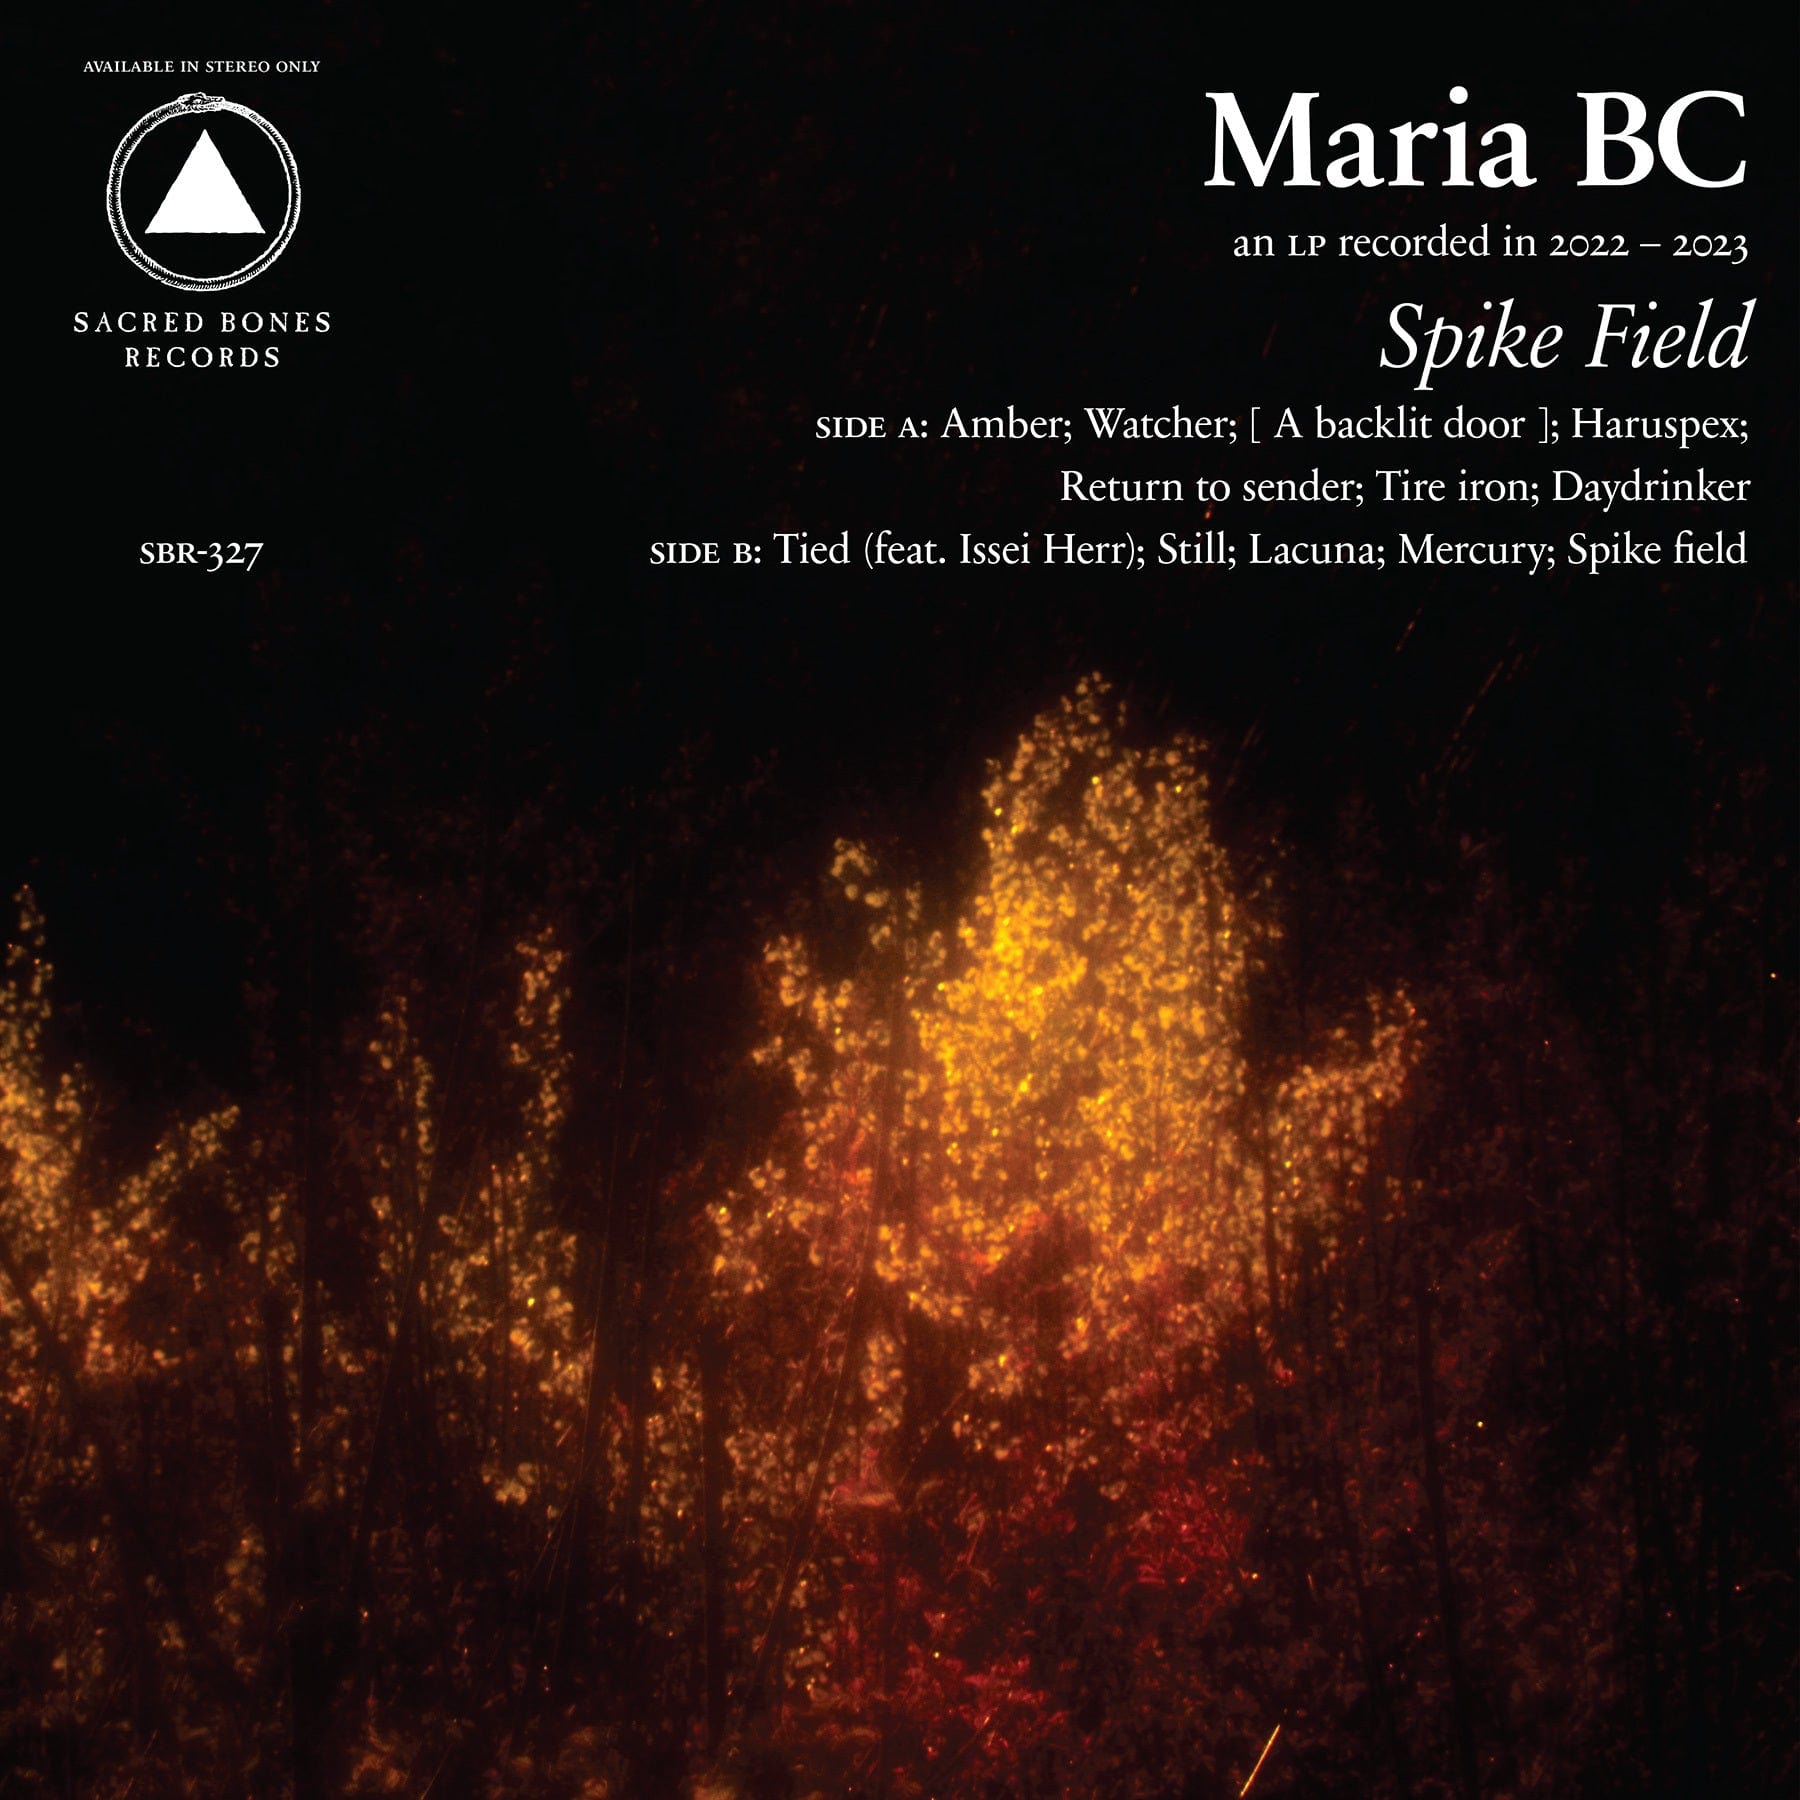 Sacred Bones CD Maria BC "Spike Field" CD